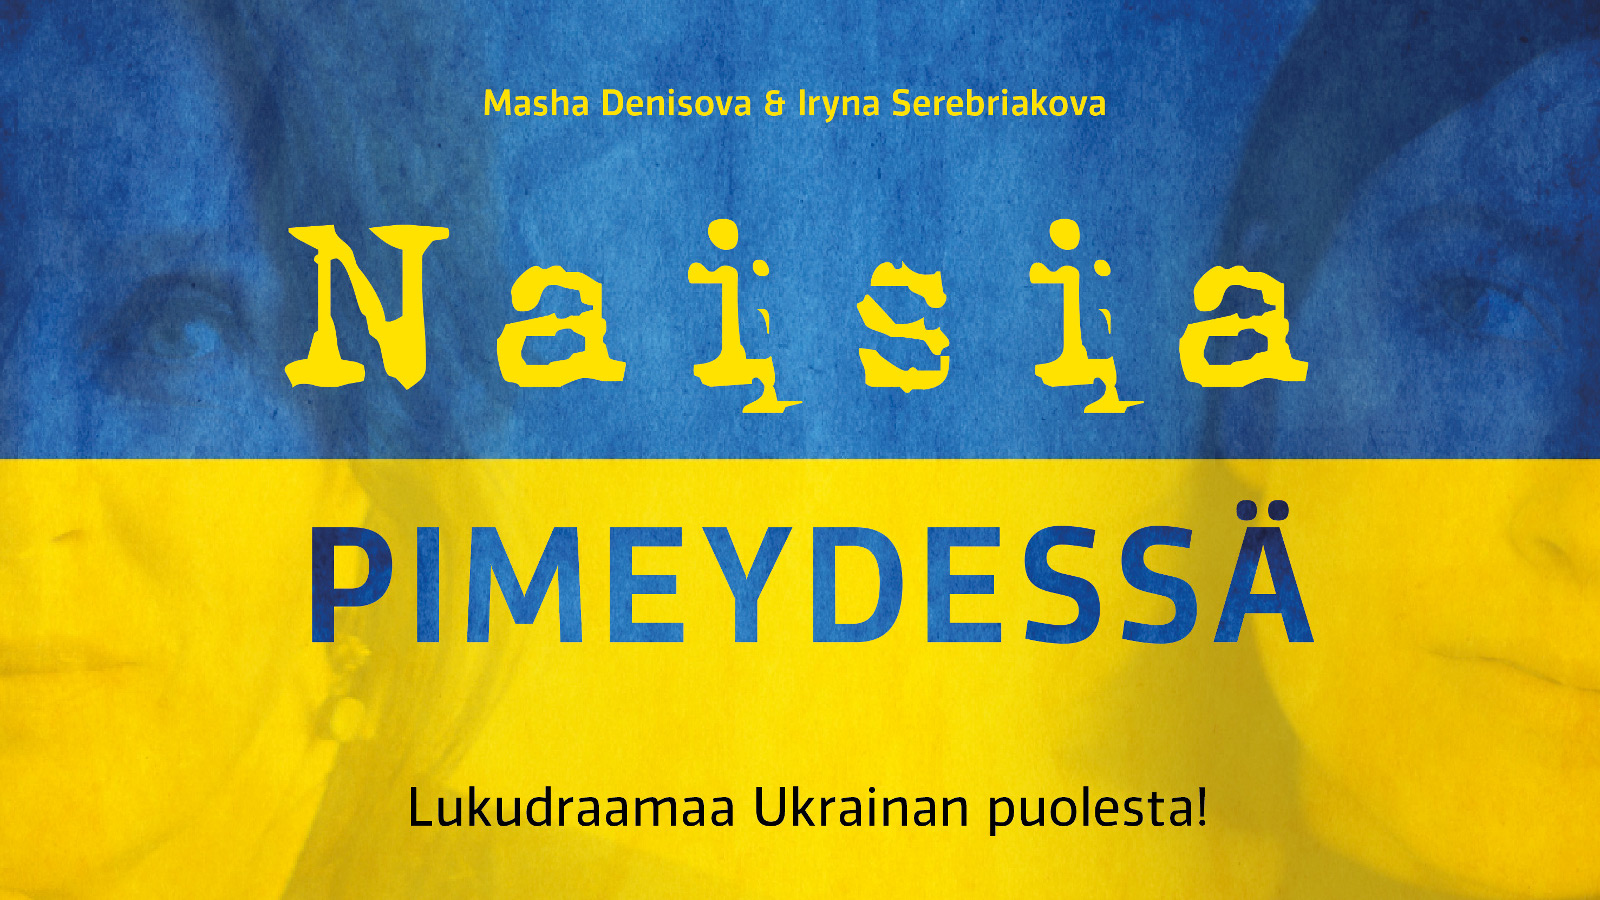 Kuvassa on Ukrainan  sini-keltainen lippu ja siinä on ylimpän on kirjoittajien nimet Iryna Serebriakova ja Masha Denisova.  Keskellä on isommin kirjaimin keltaisella Naisia ja sinisellä pimeydessä. Alhaalla Lukudraamaa Ukrainan puolesta!